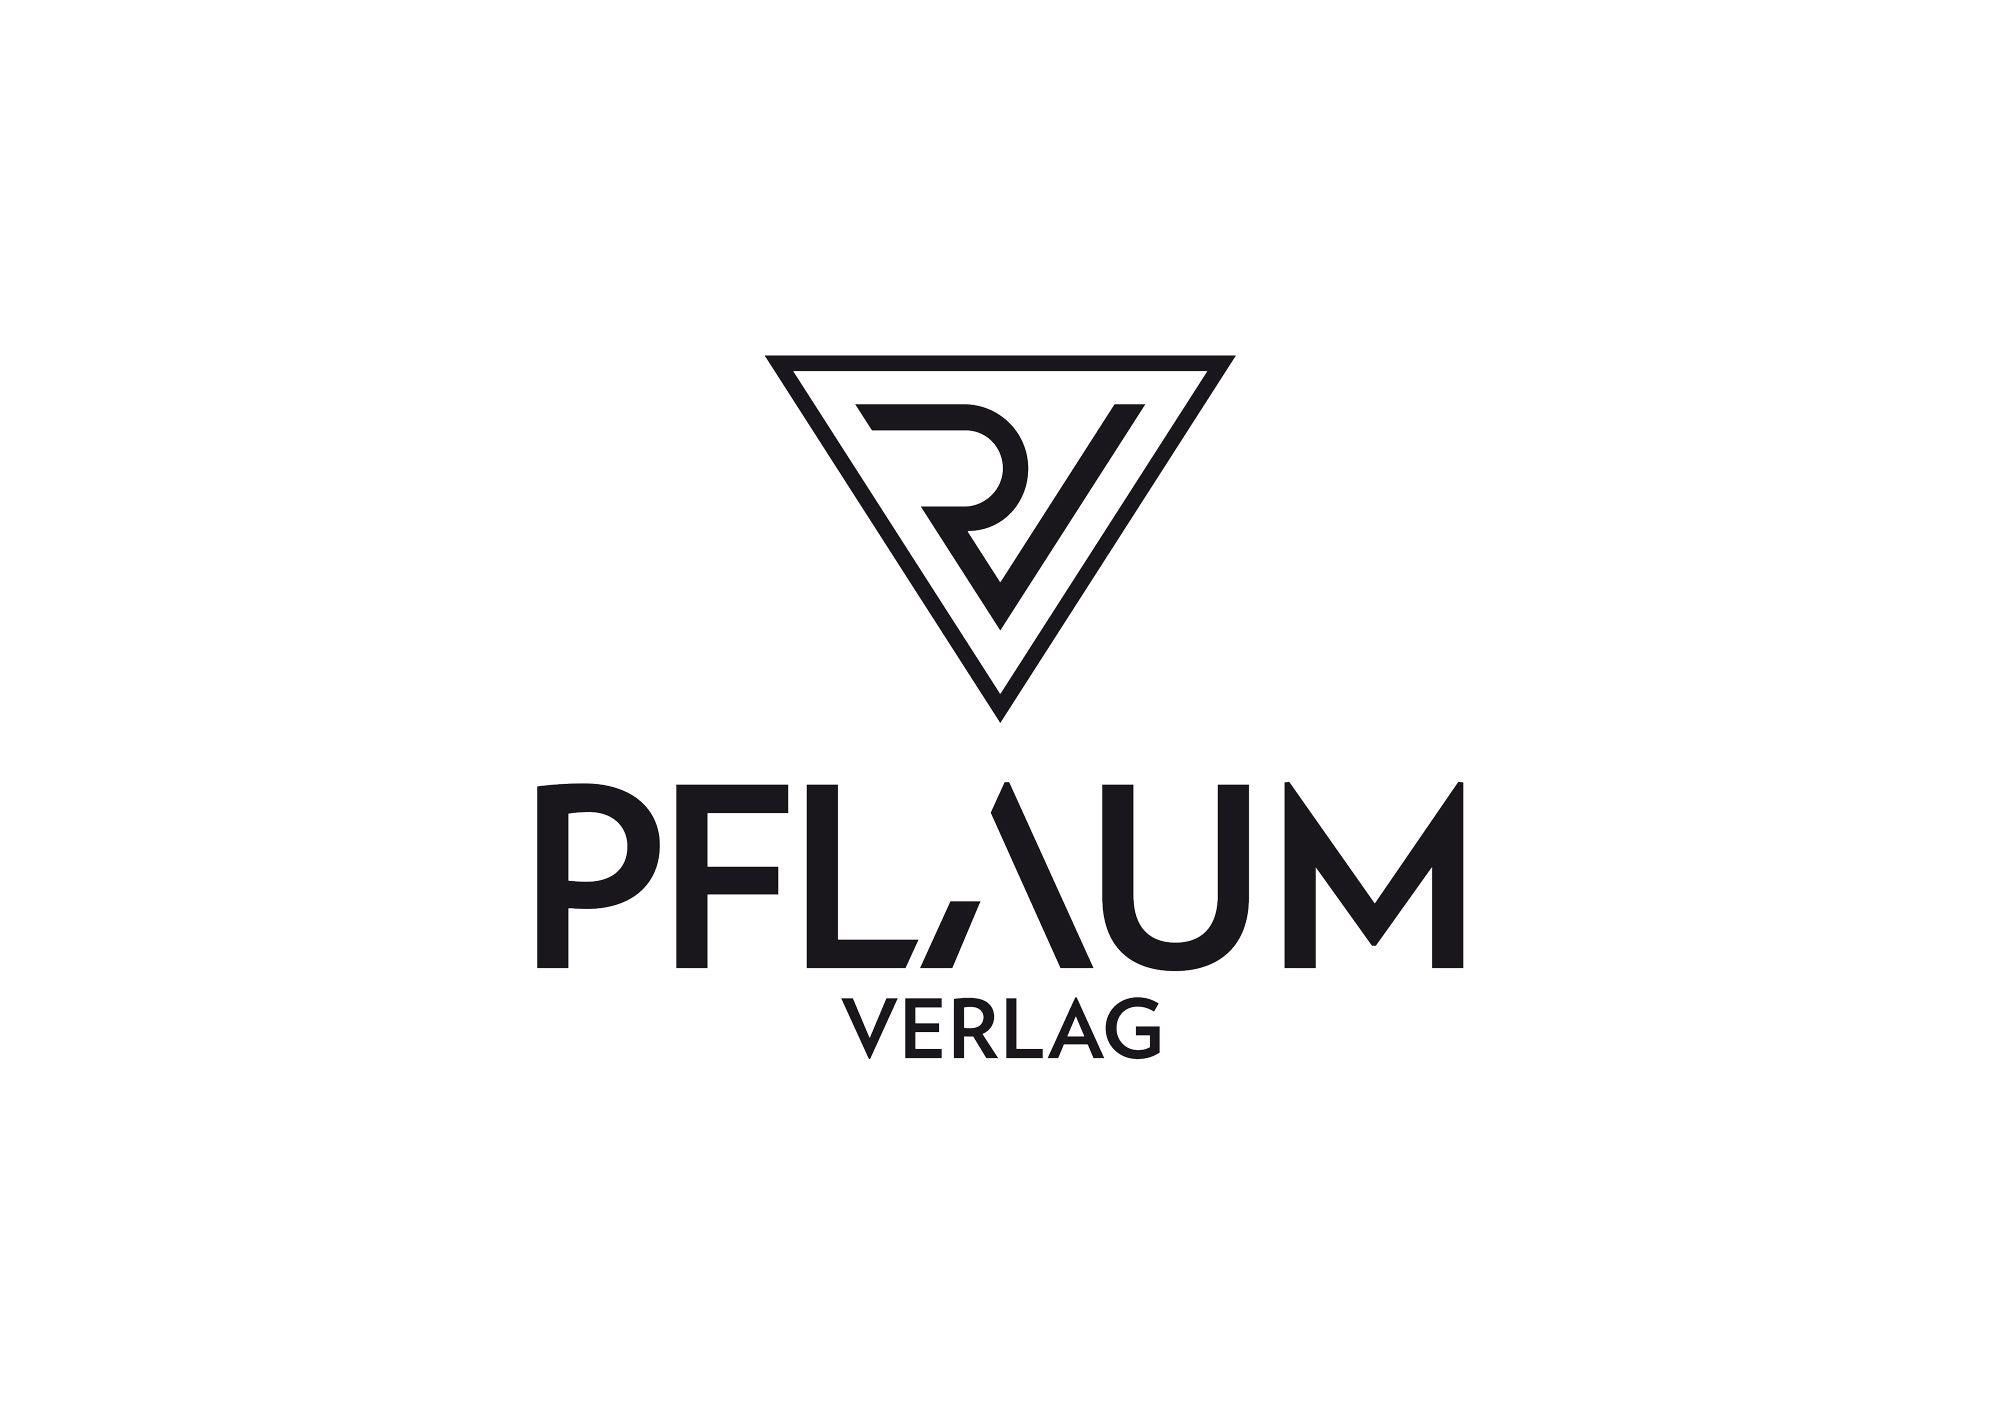 Pflaum Logo - Pflaum Verlag - Logo - Sebastian Wolter Design #logo #icon ...